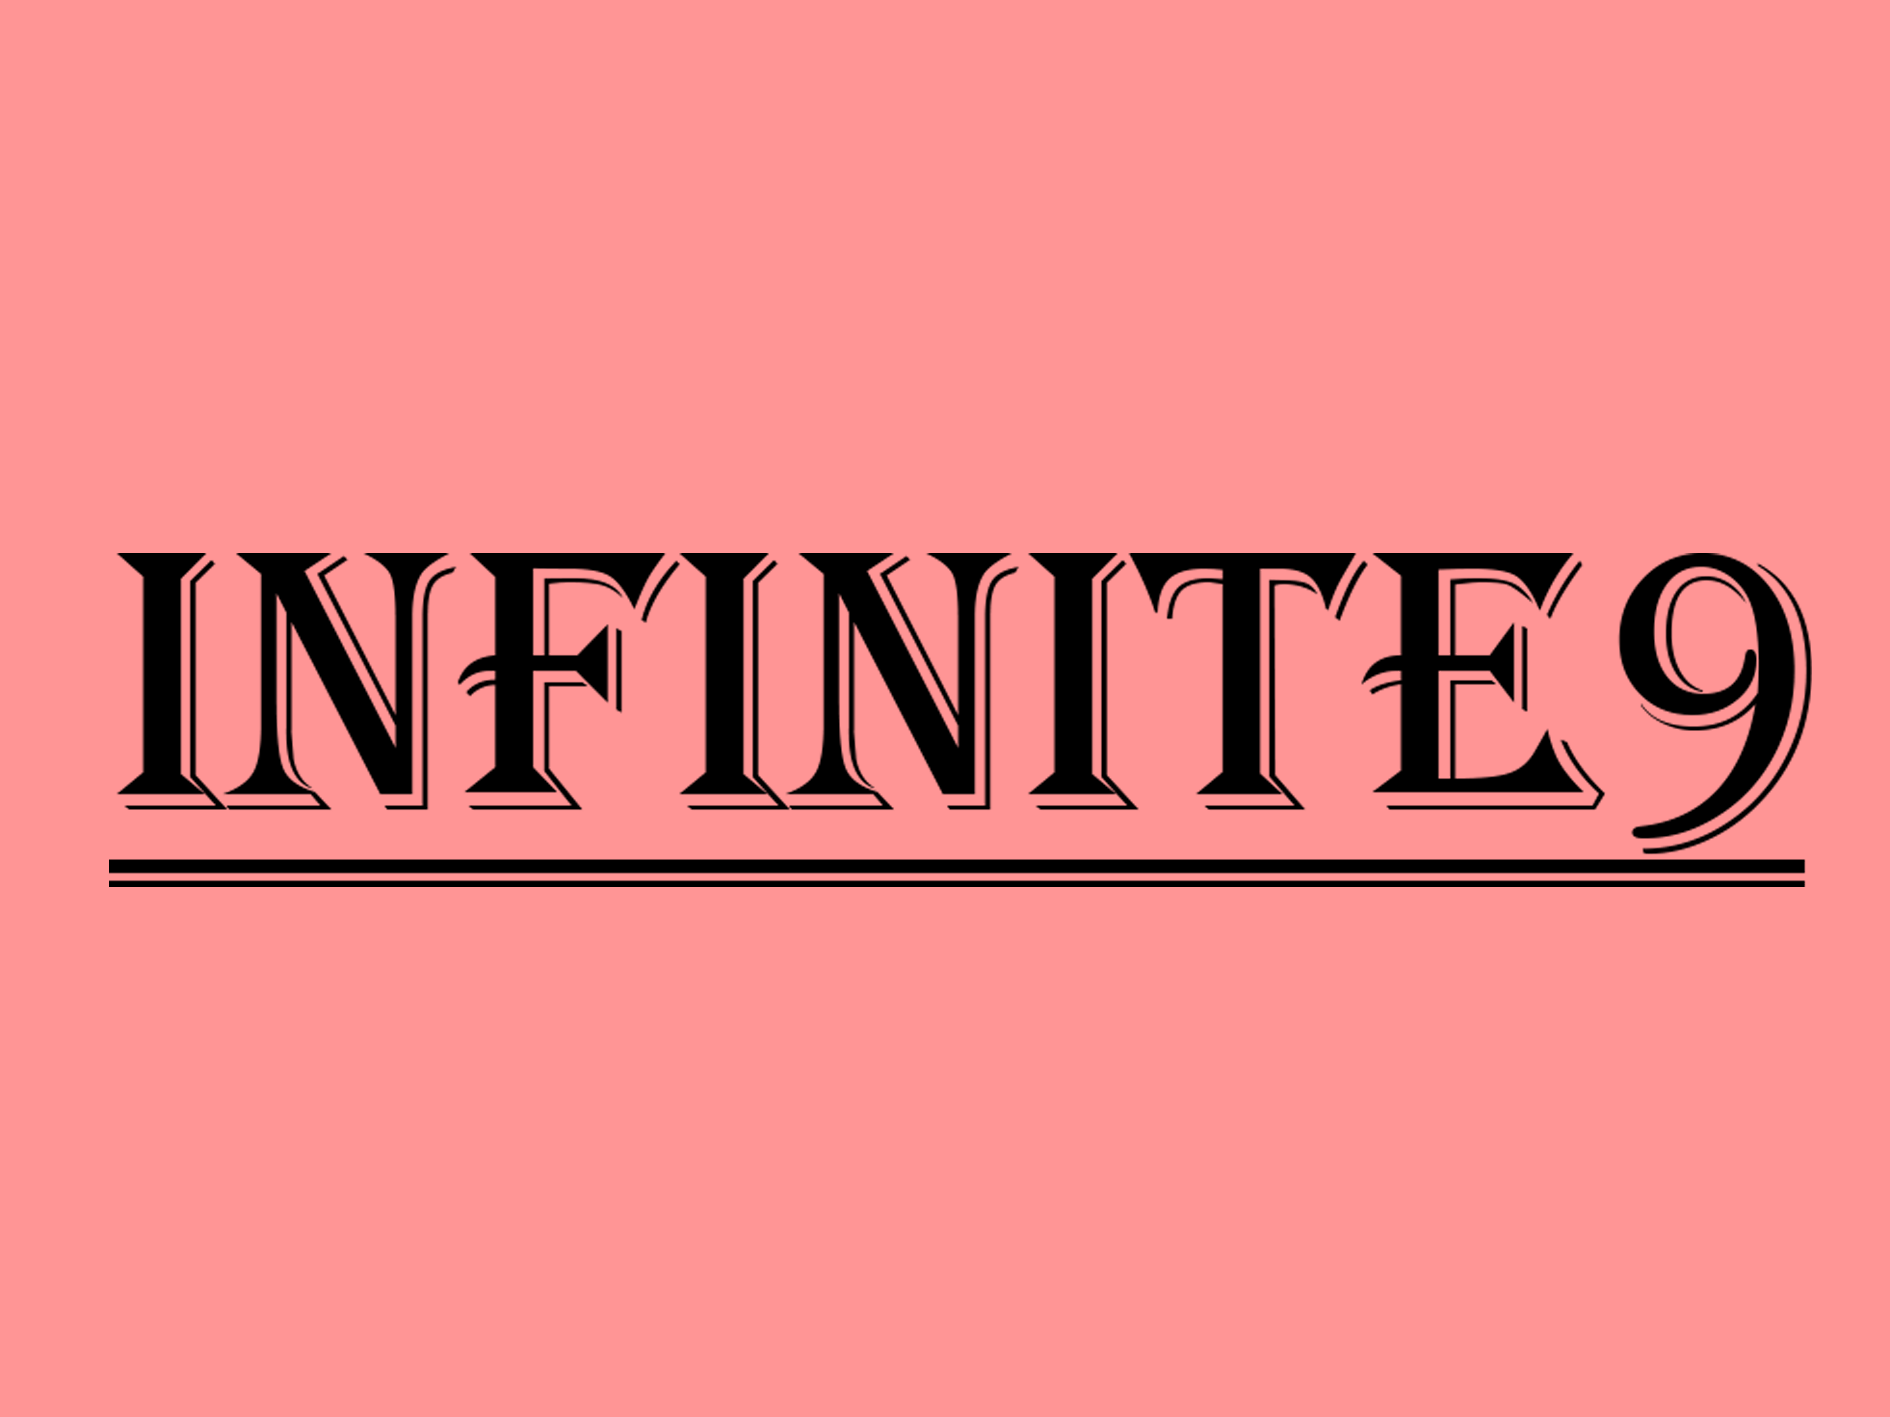 Infinite9